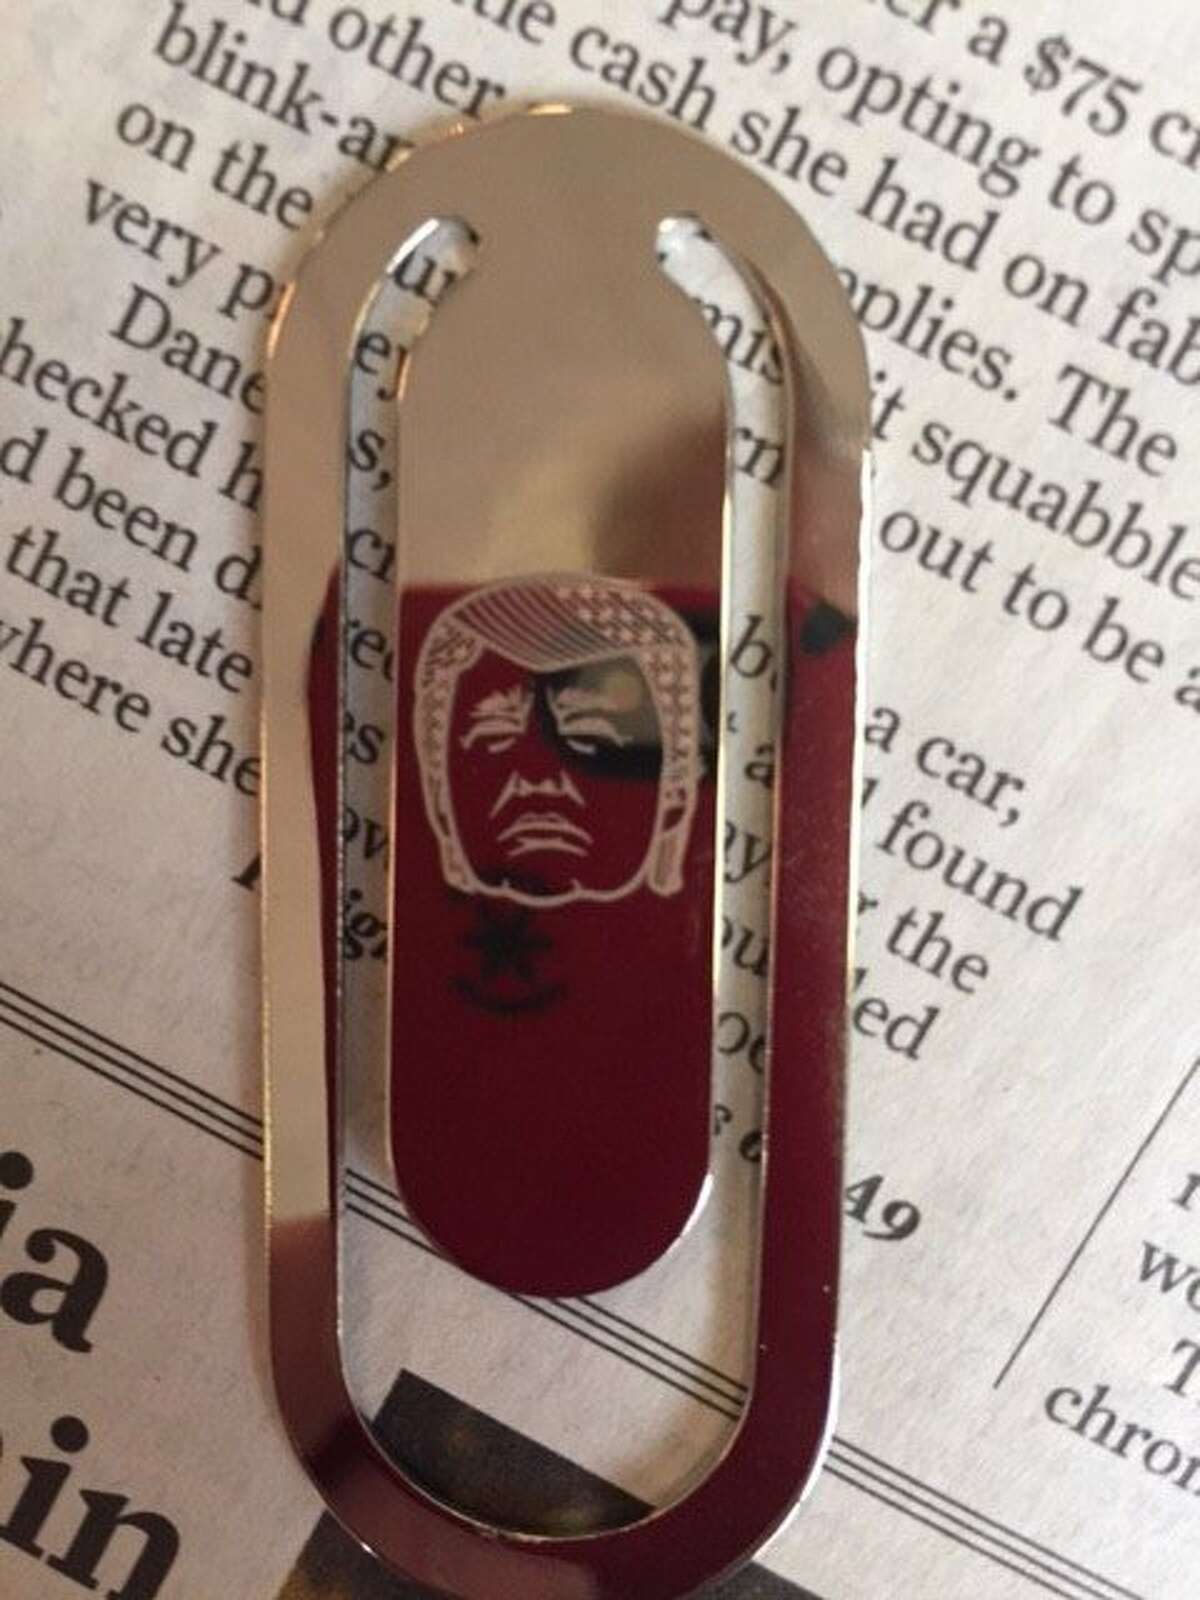 The Trump bookmark: looks like Elvis?